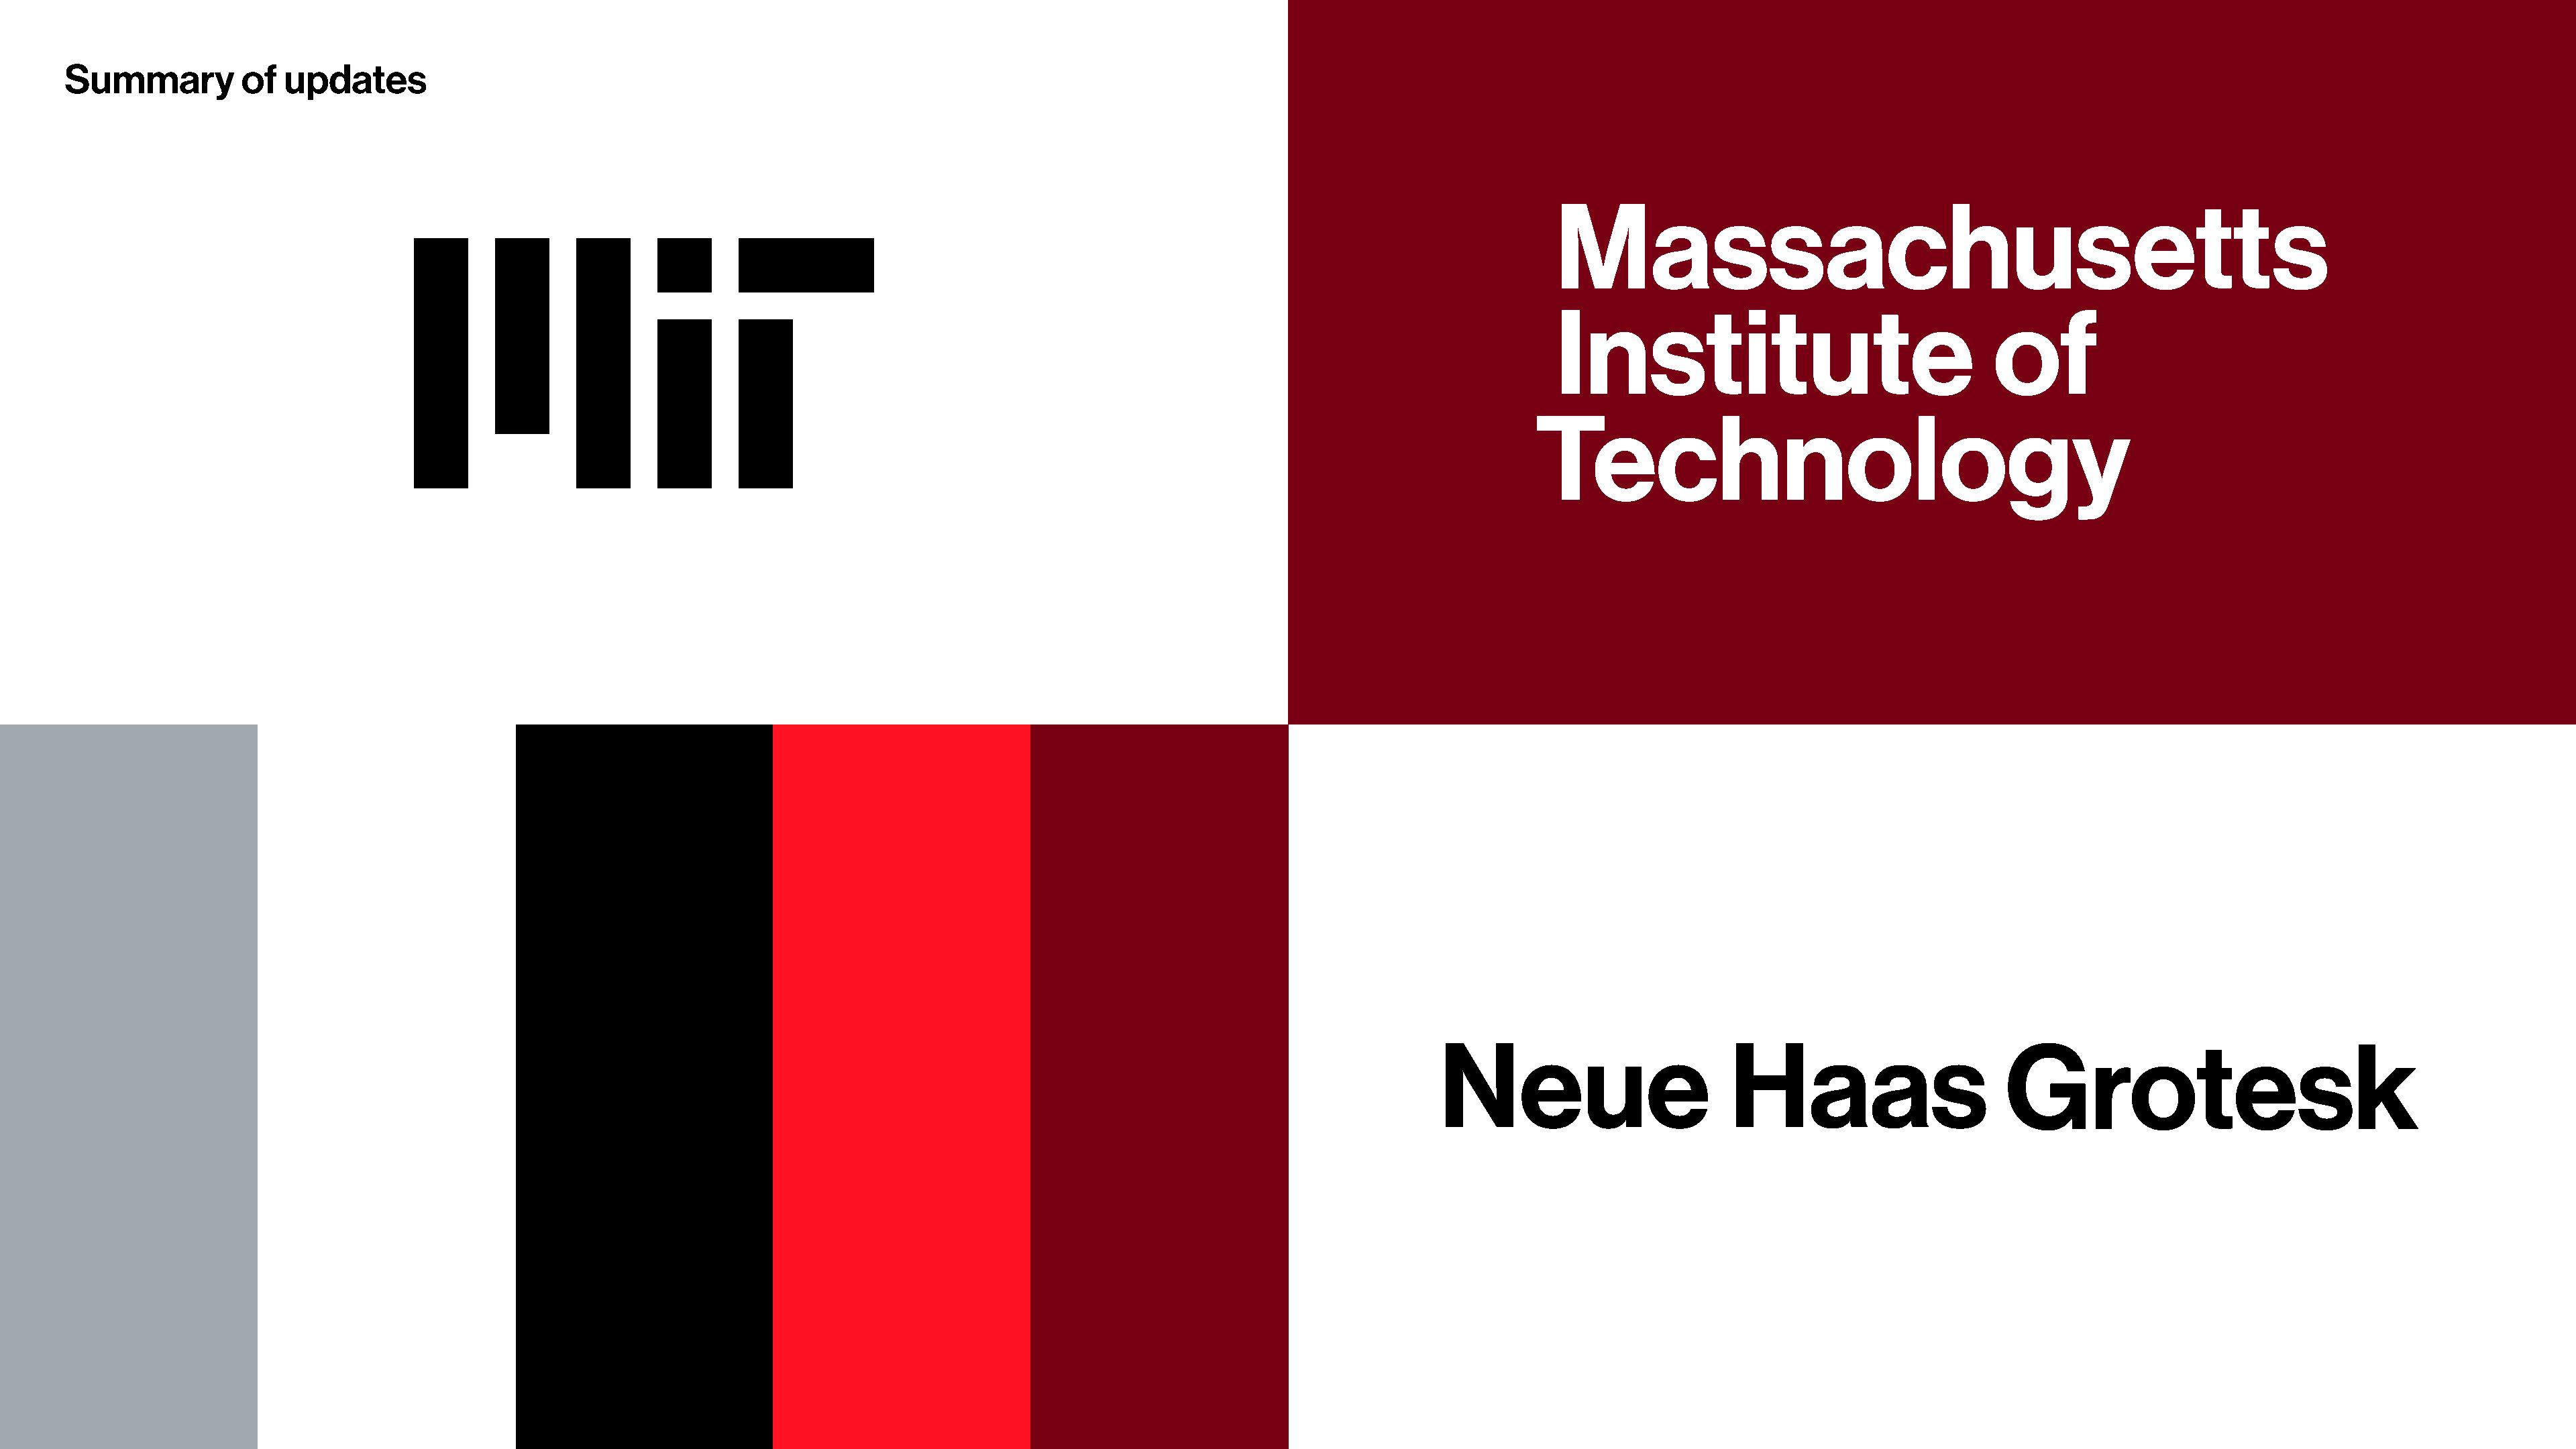 MIT Brand System